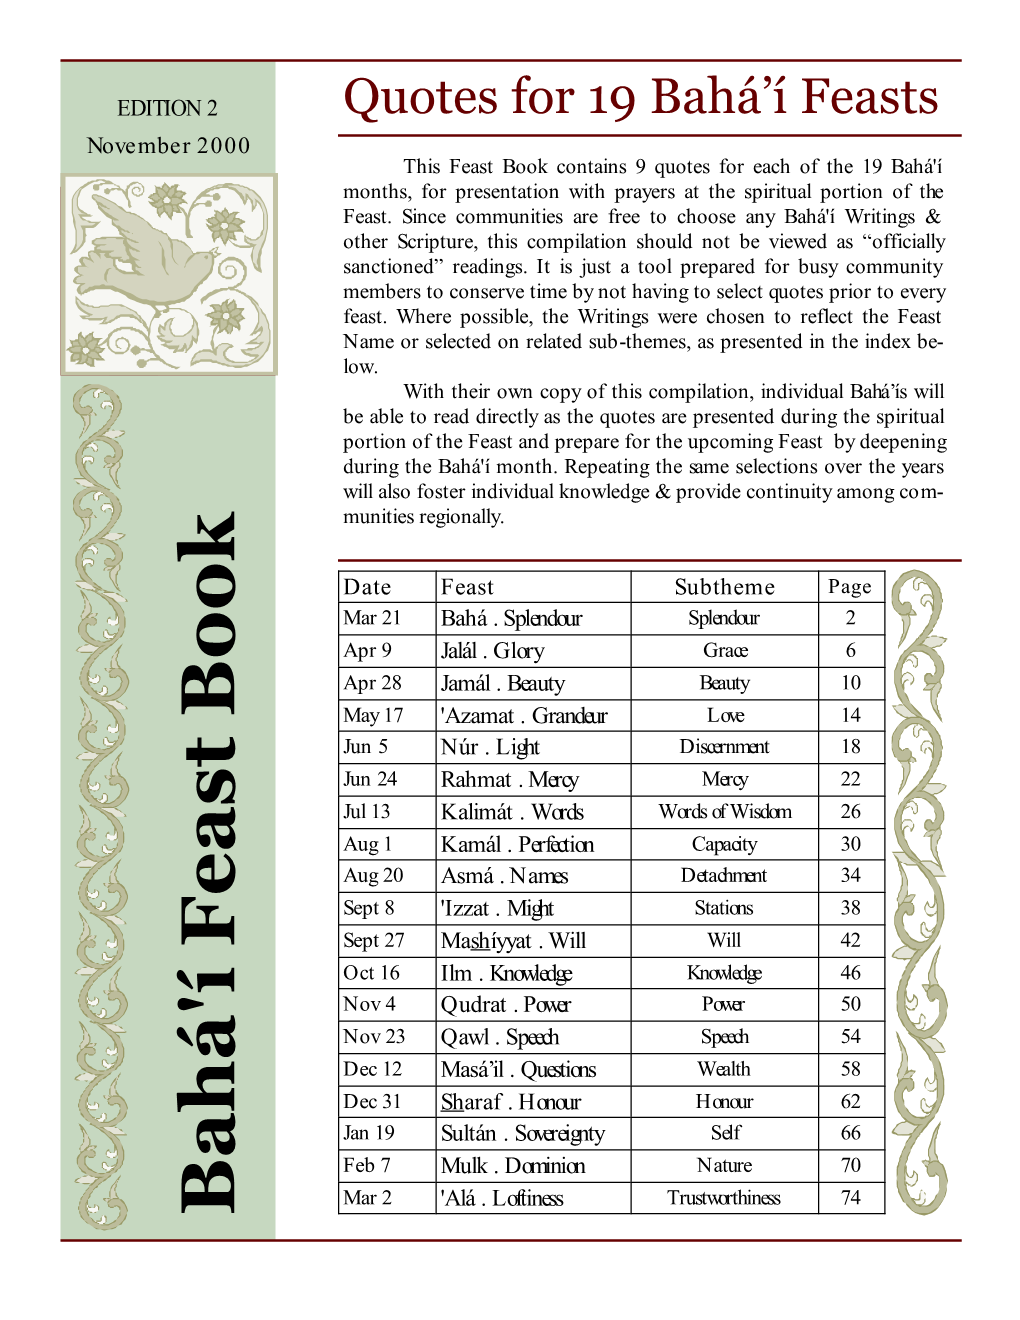 Bahá'í Feast Book Feast of Bahá (Splendour)—March 21